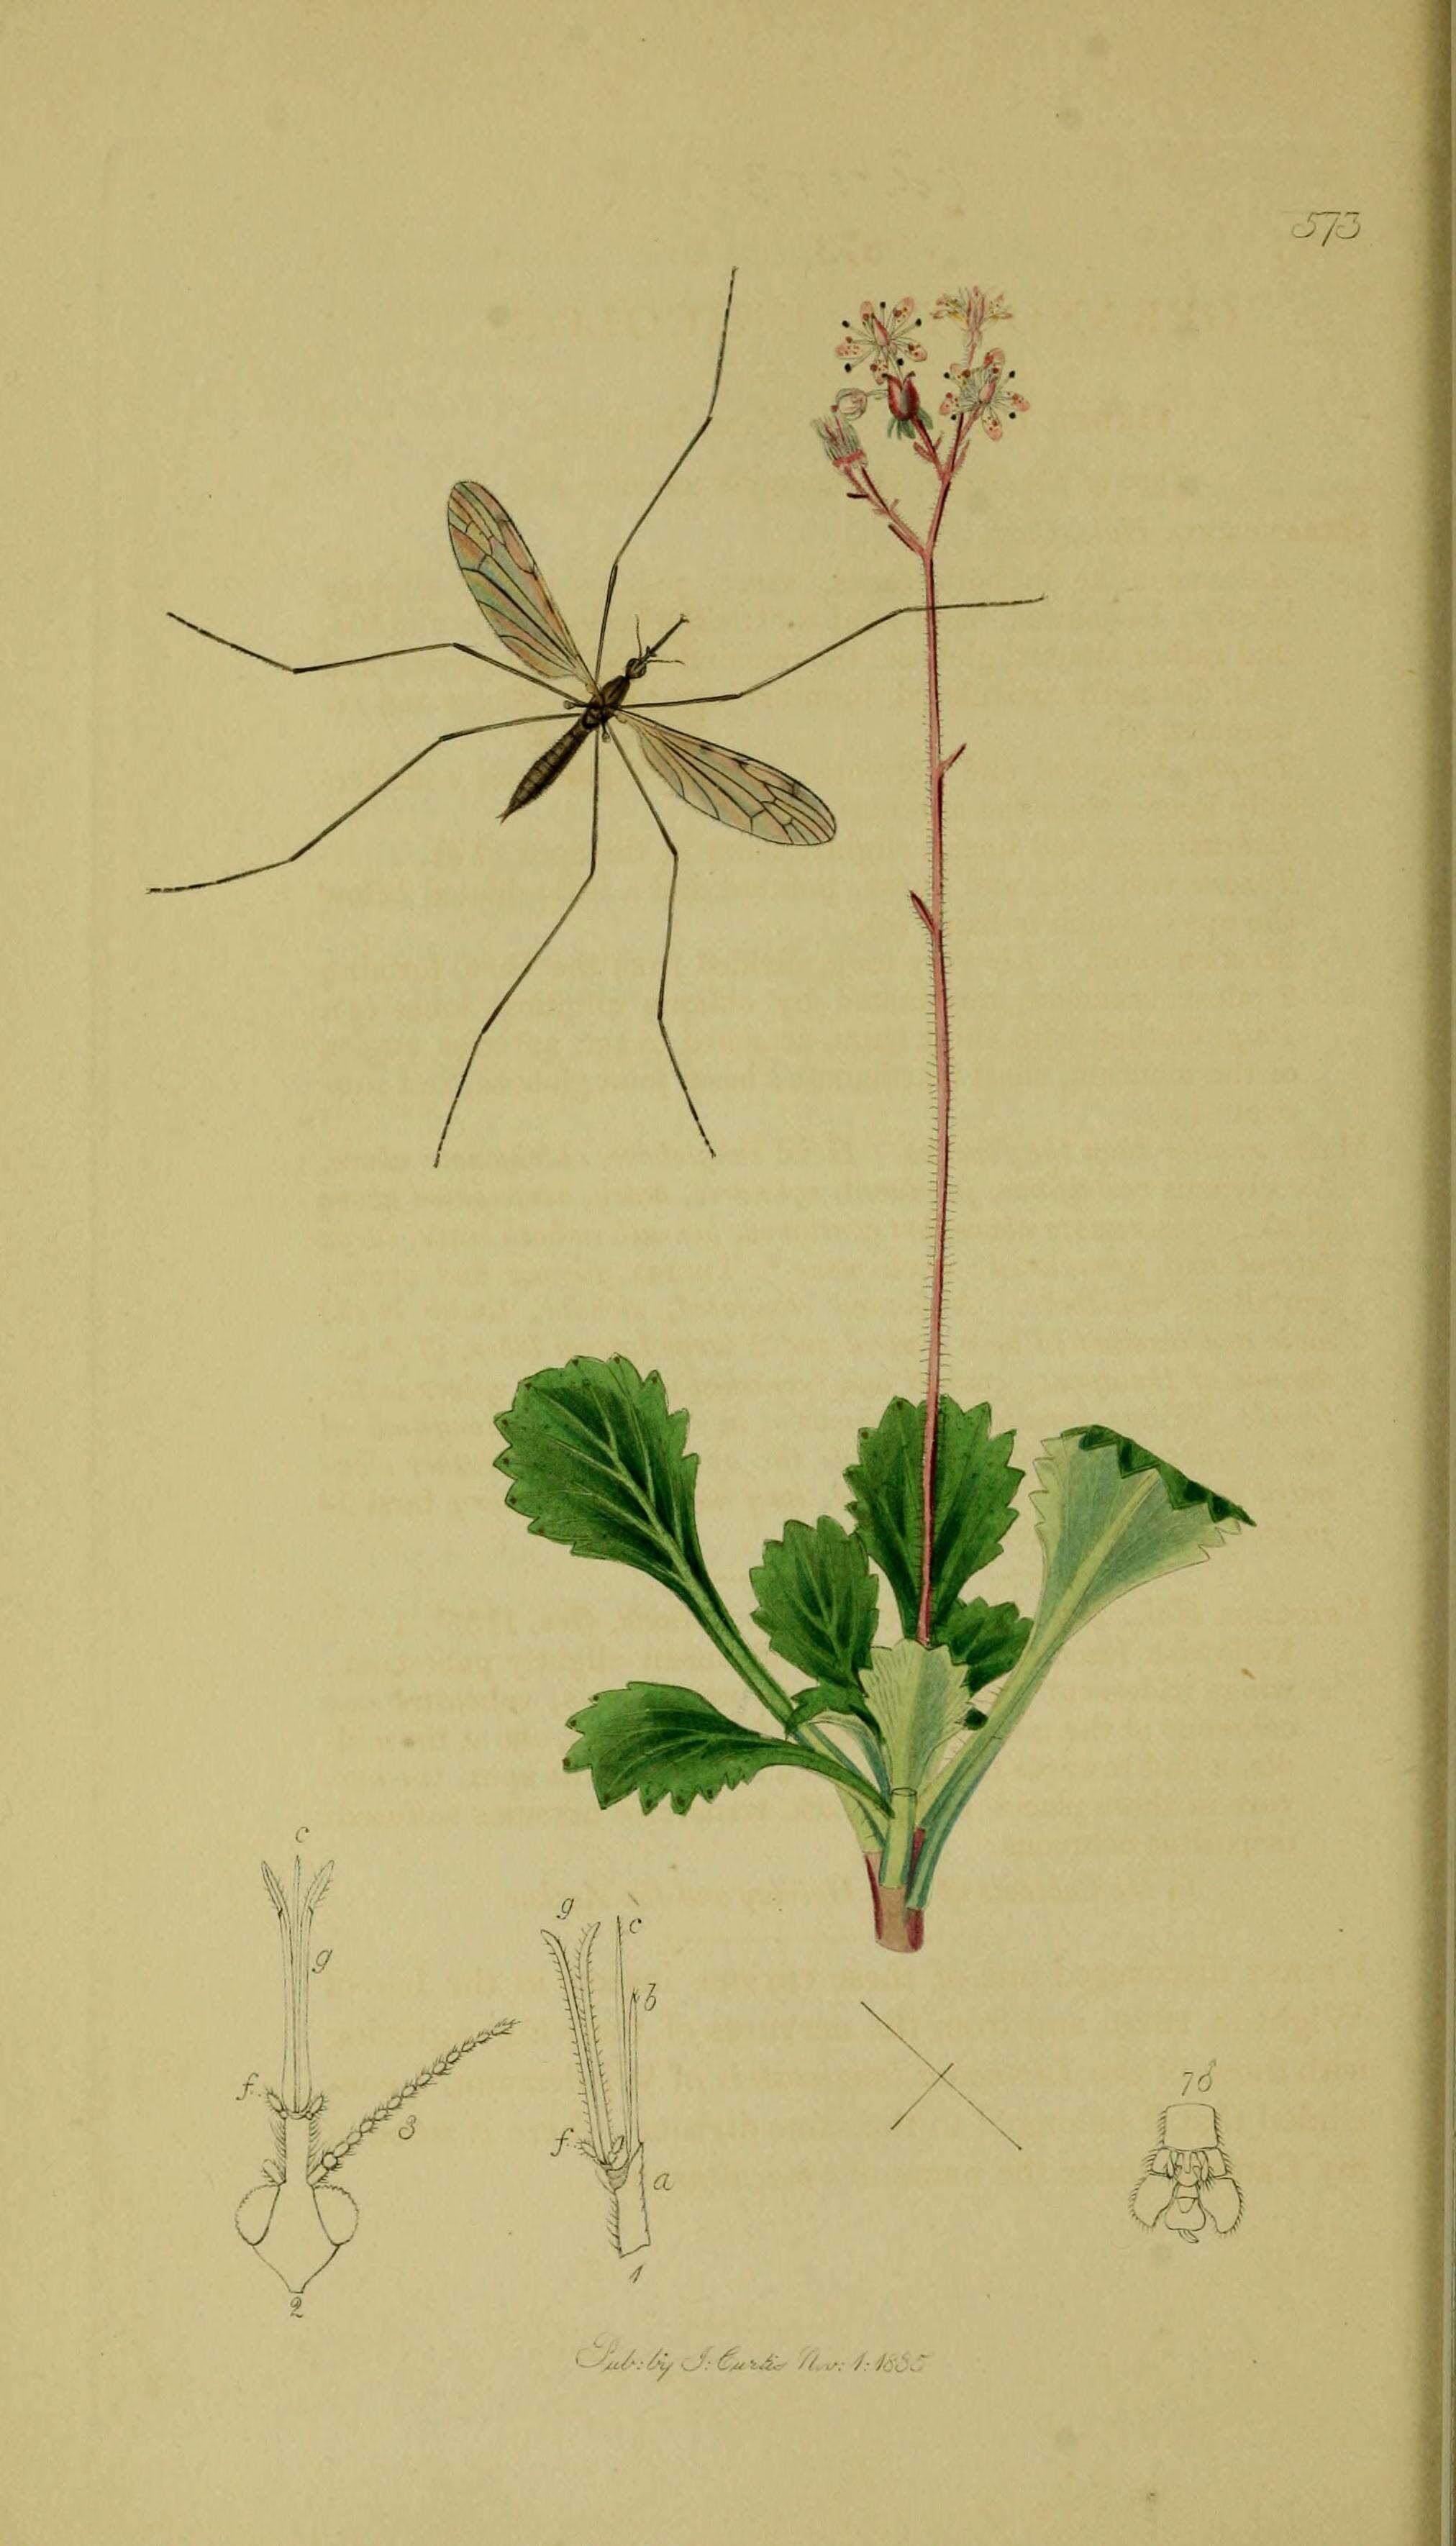 Image of Geranomyia unicolor Haliday 1833